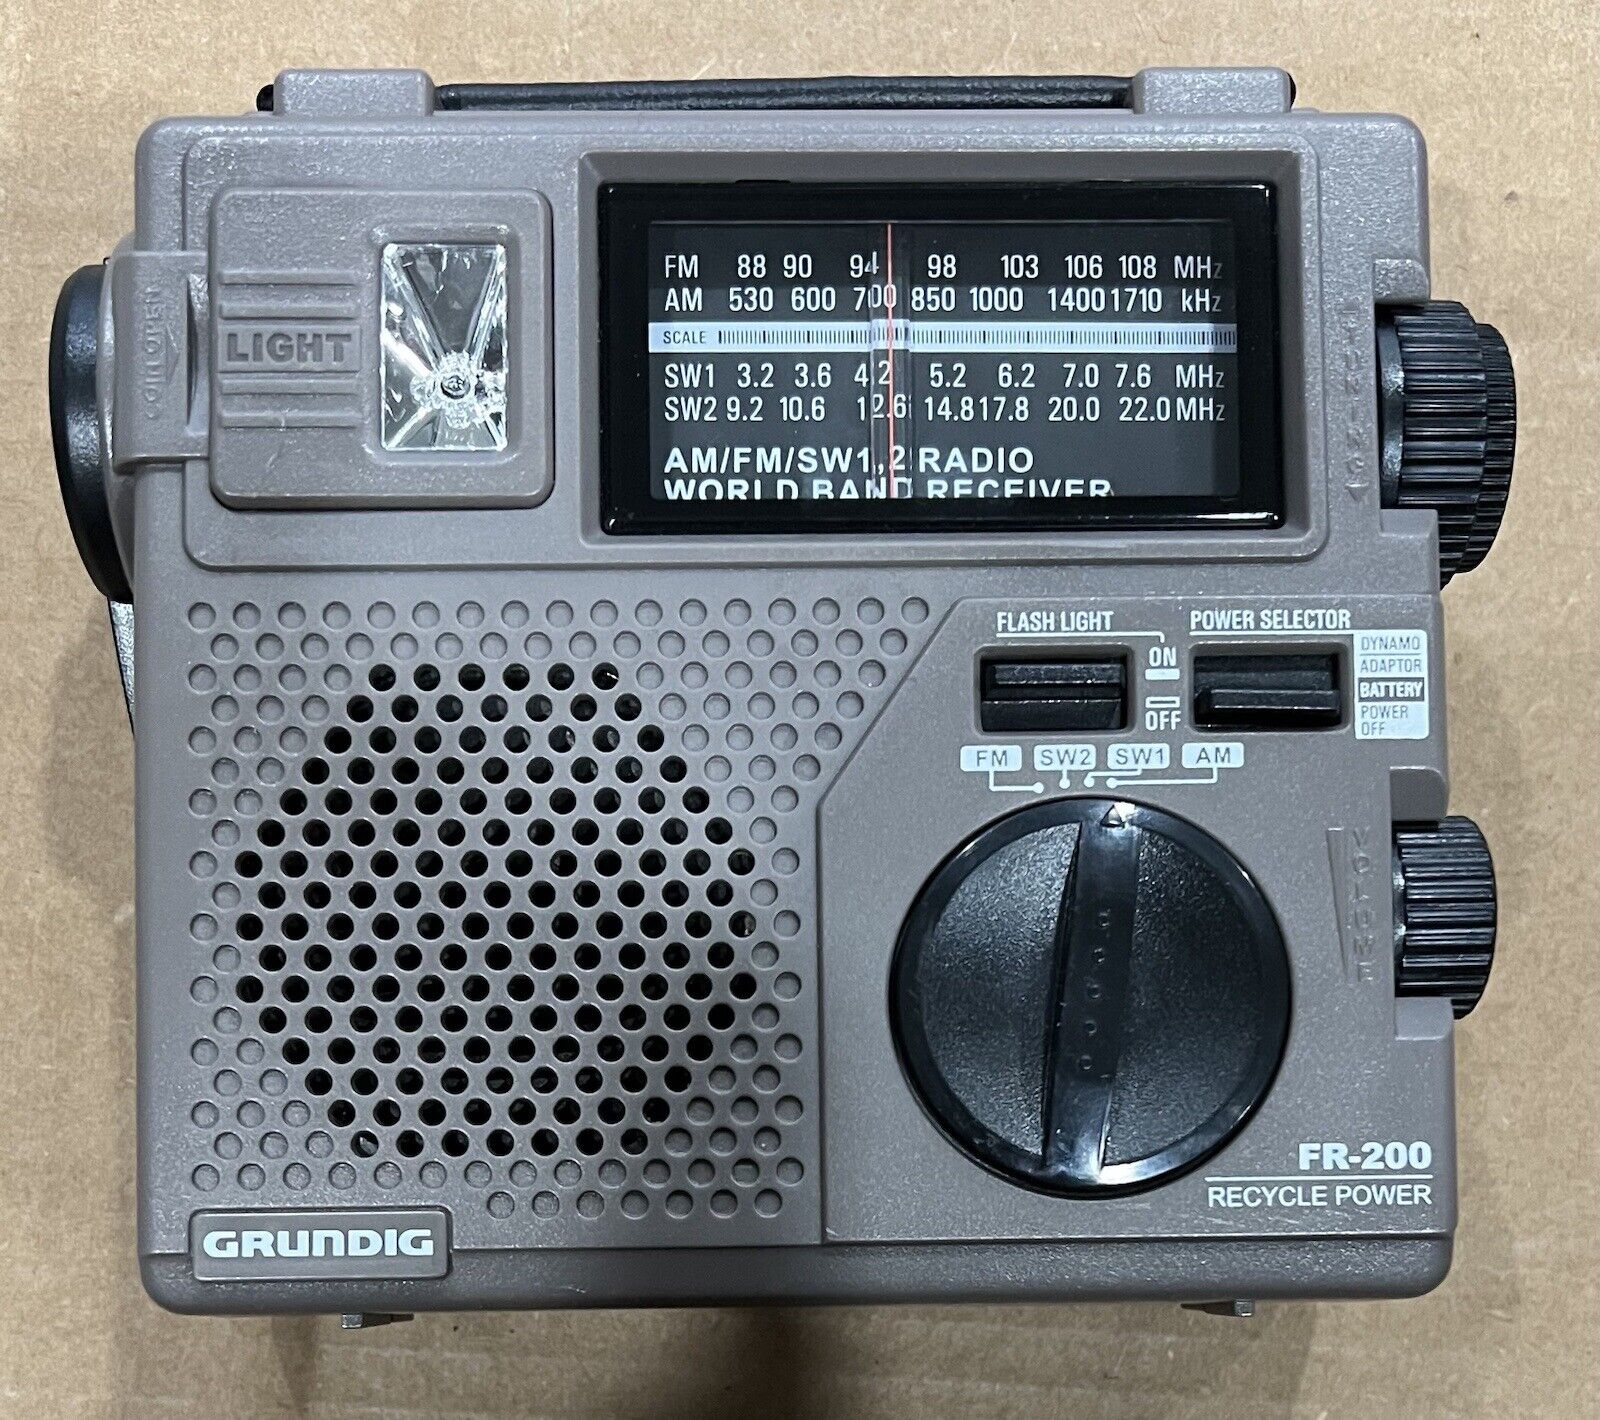 Vintage GRUNDIG Emergency FR200 Radio, AM/FM SW1, SW2 Receiver, Gray